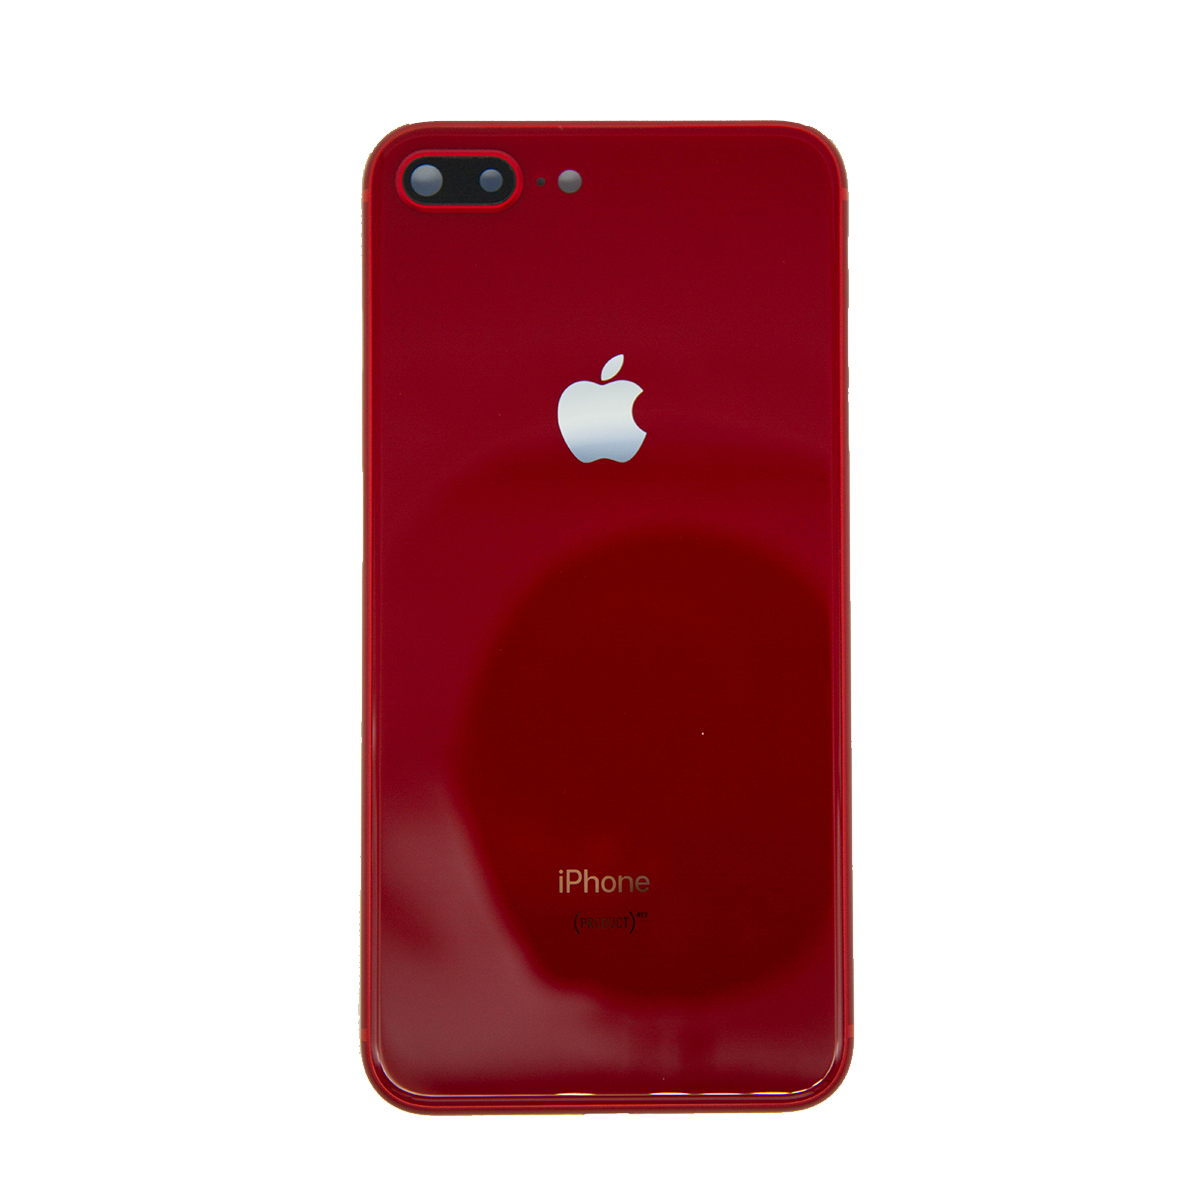 Carcasa iPhone 8 plus rose gold – FLUXX REFACCIONES PARA CELULAR